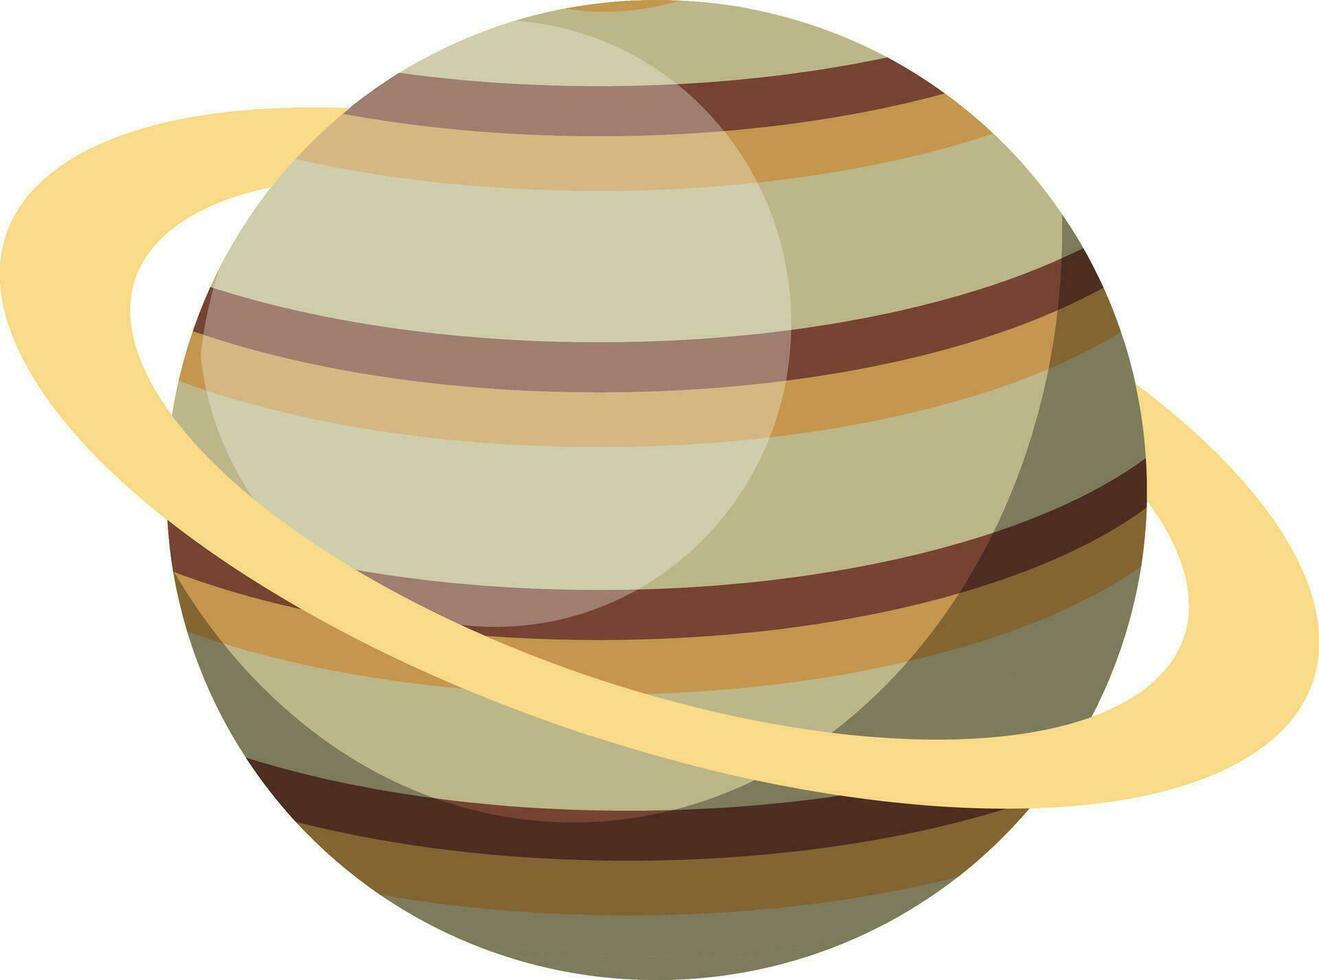 einfach Saturn Design Vektor Illustration auf Weiß Hintergrund.